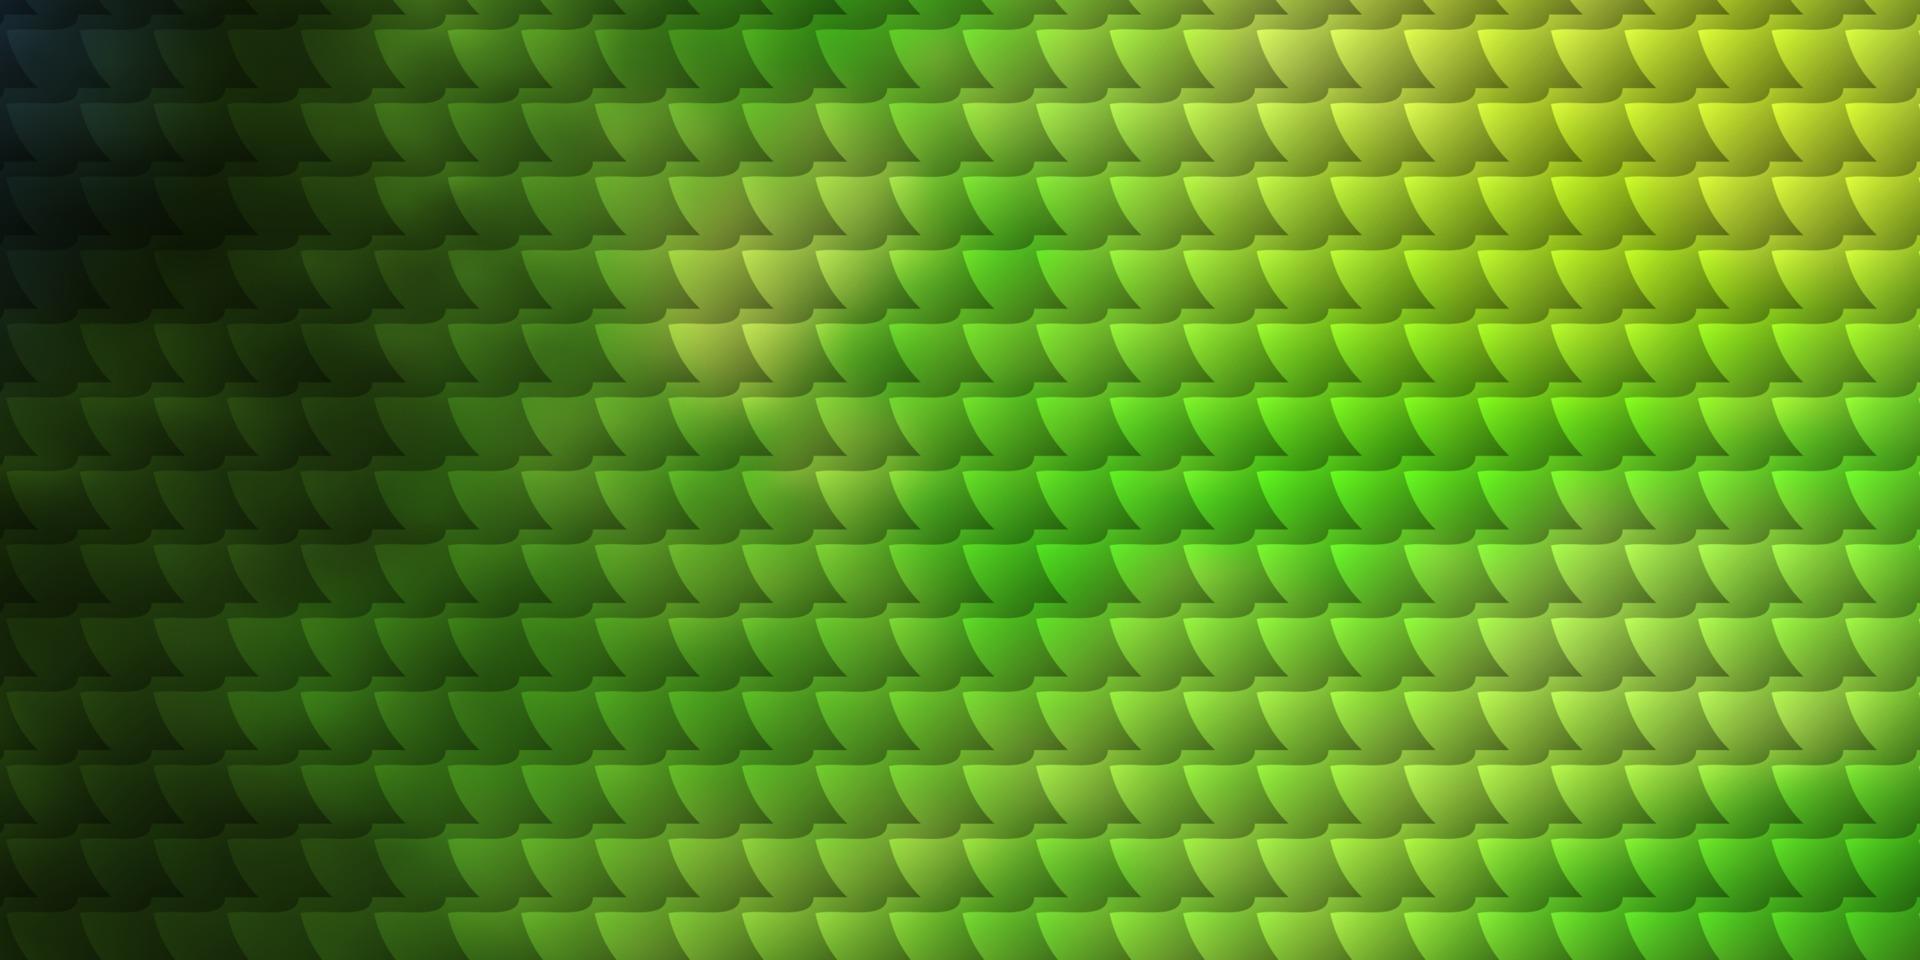 Fondo de vector verde oscuro, amarillo con rectángulos.